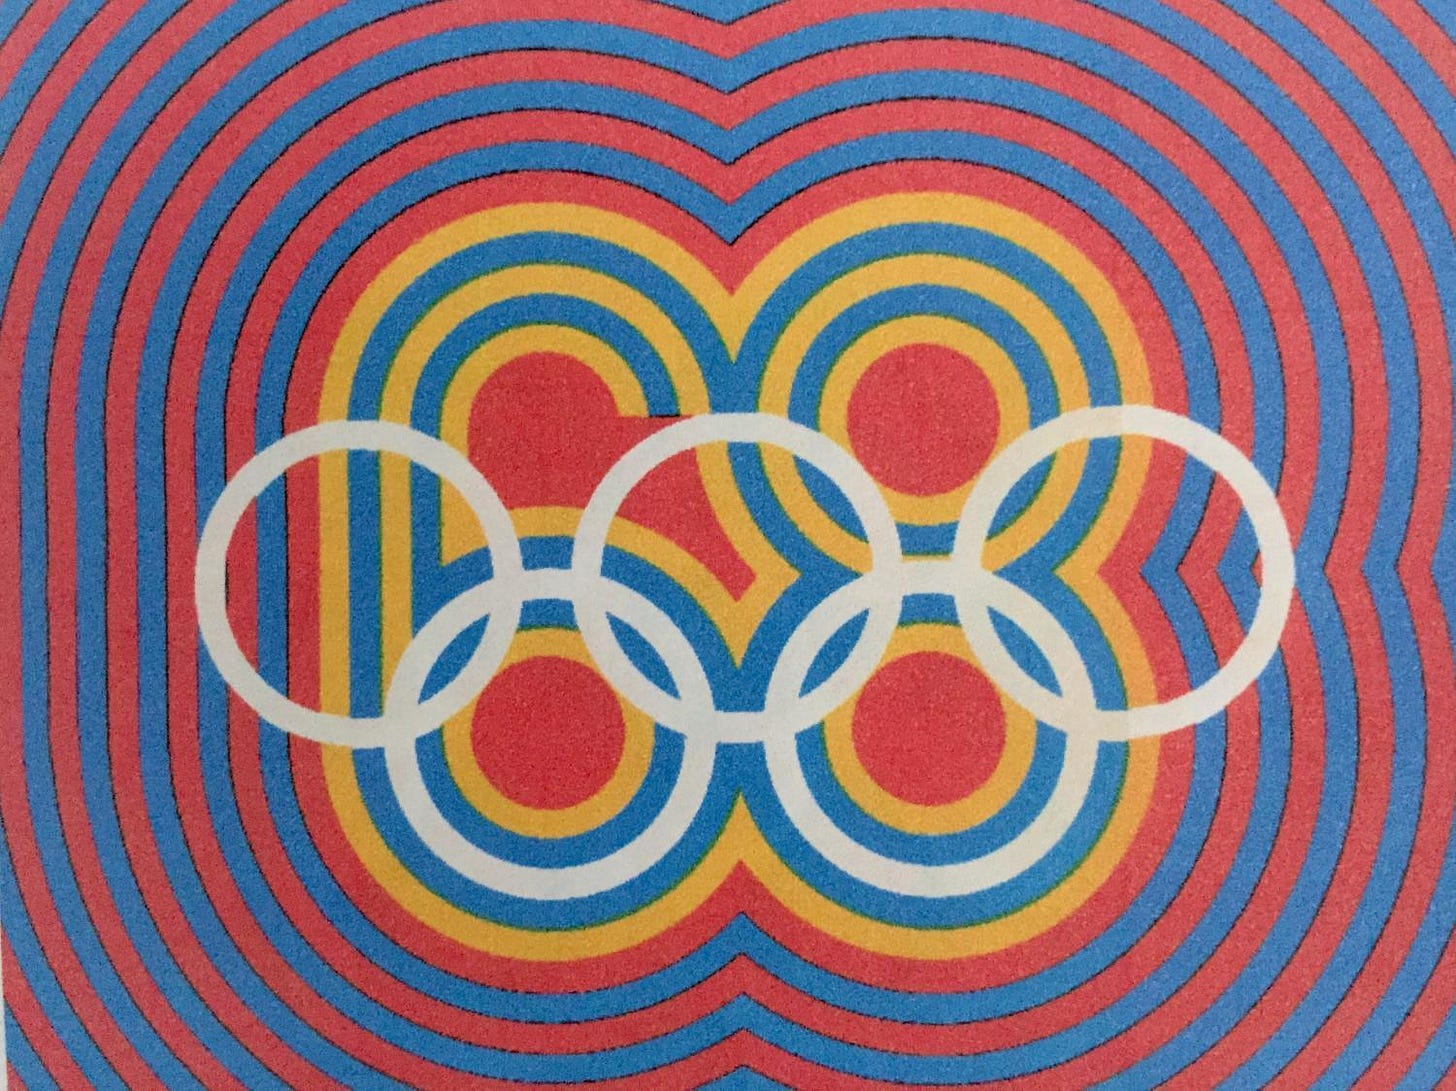 Pôster com o símbolo dos Jogos Olímpicos de 1968.